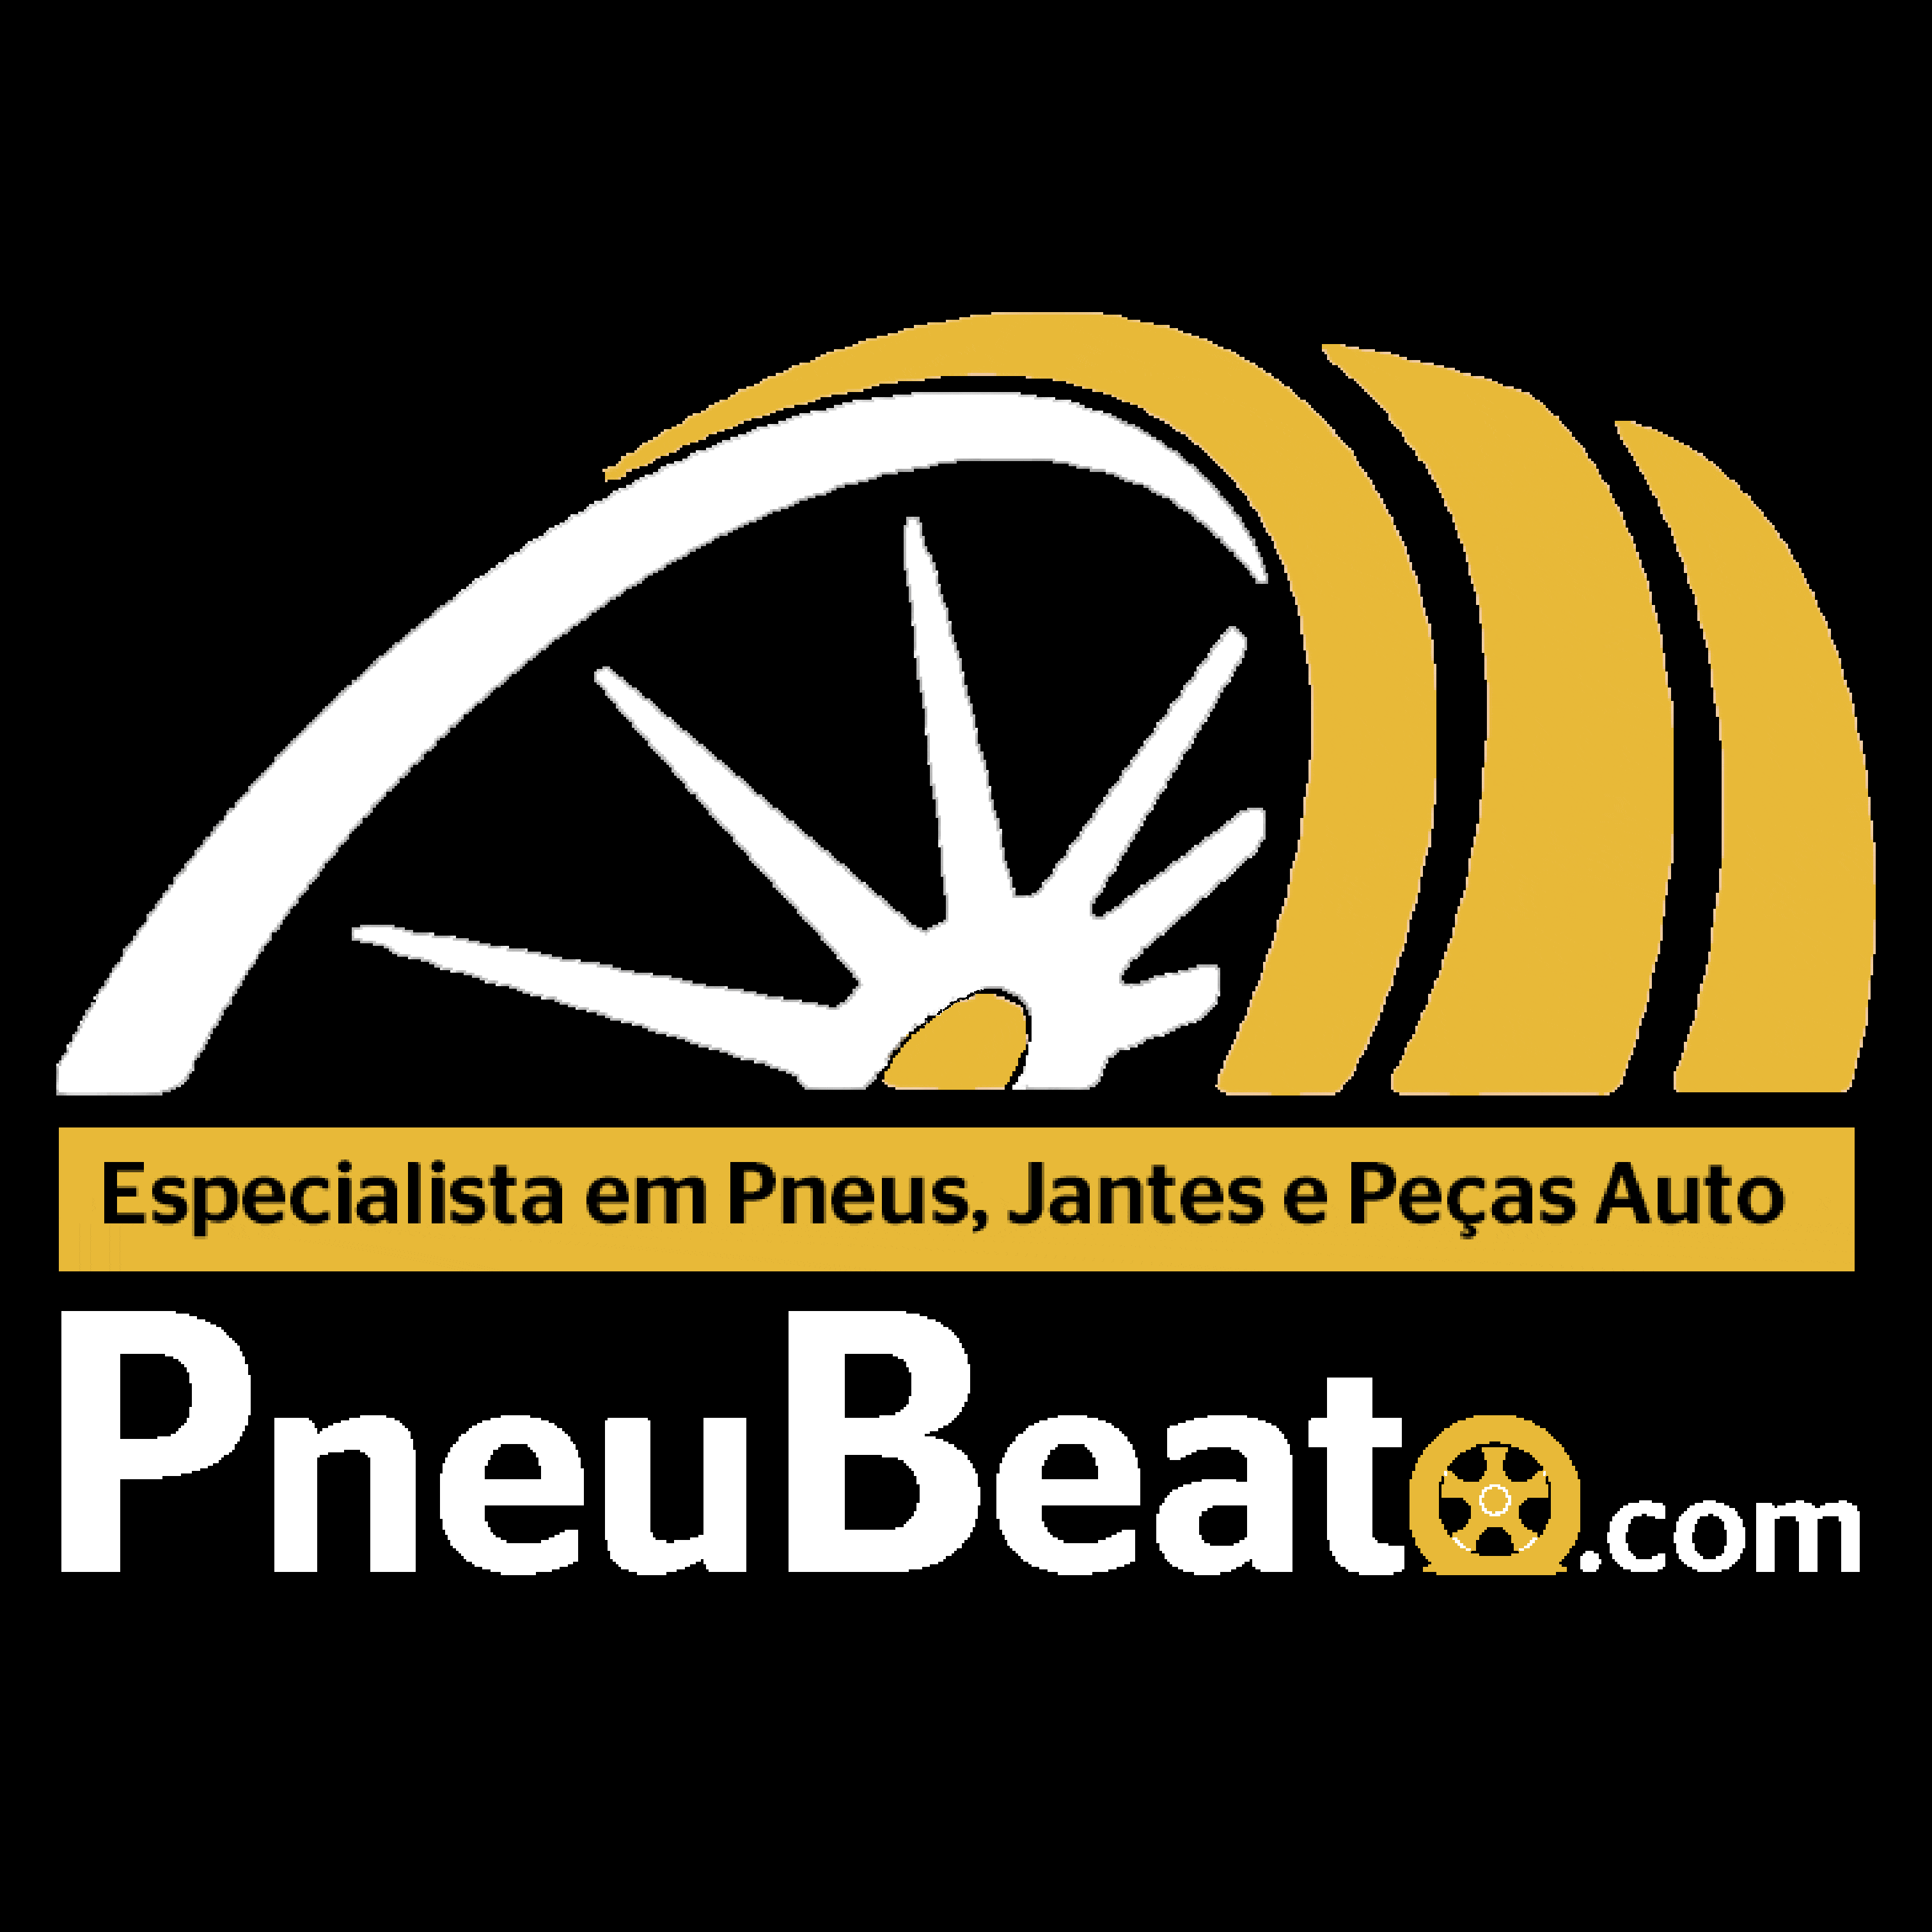 (c) Pneubeato.com